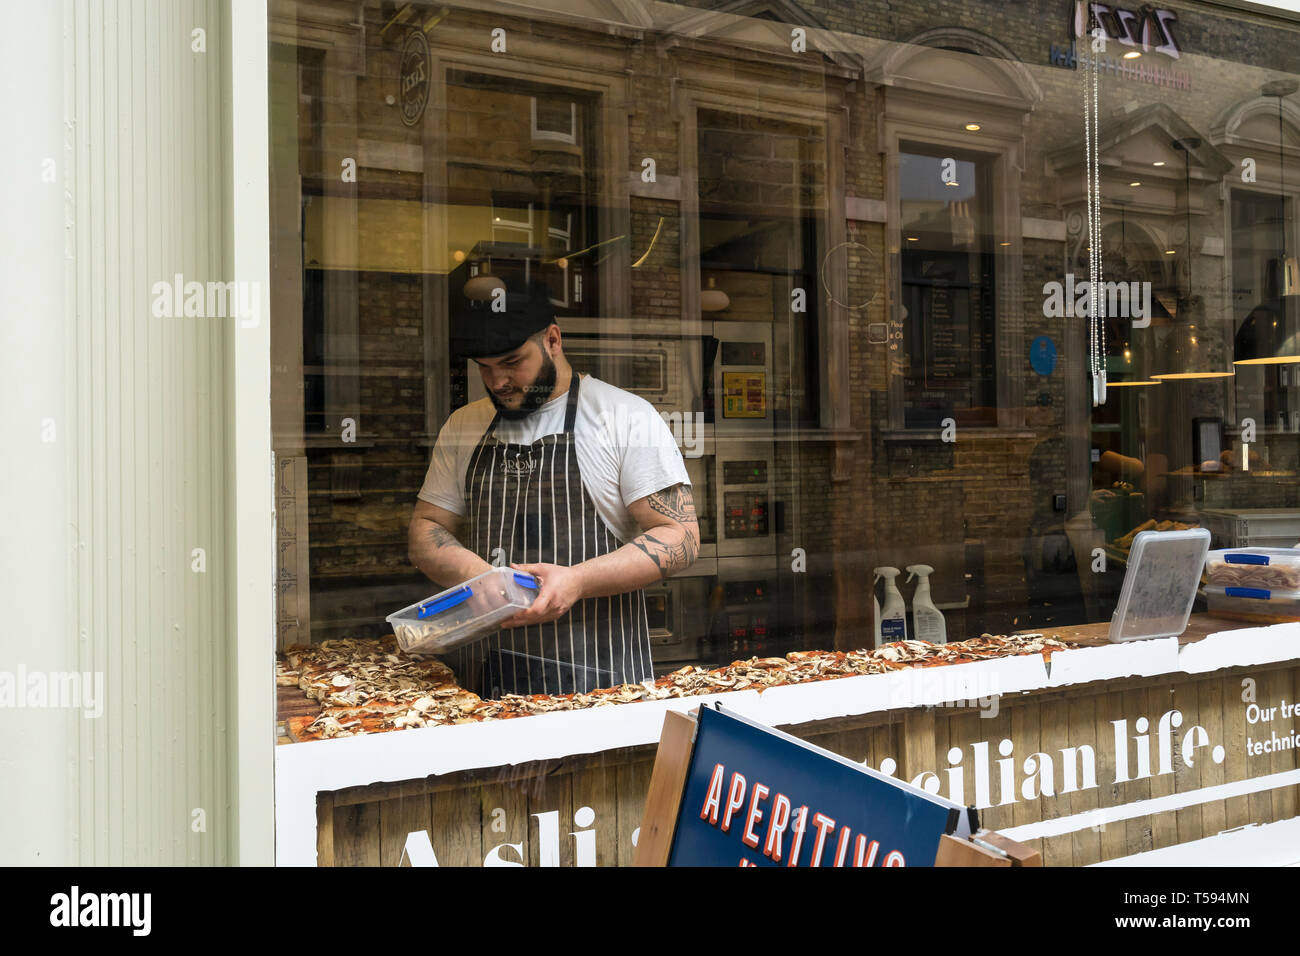 L'ajout de chef garniture à pizzas à Aromi cafe Benet Street Cambridge 2019 Banque D'Images